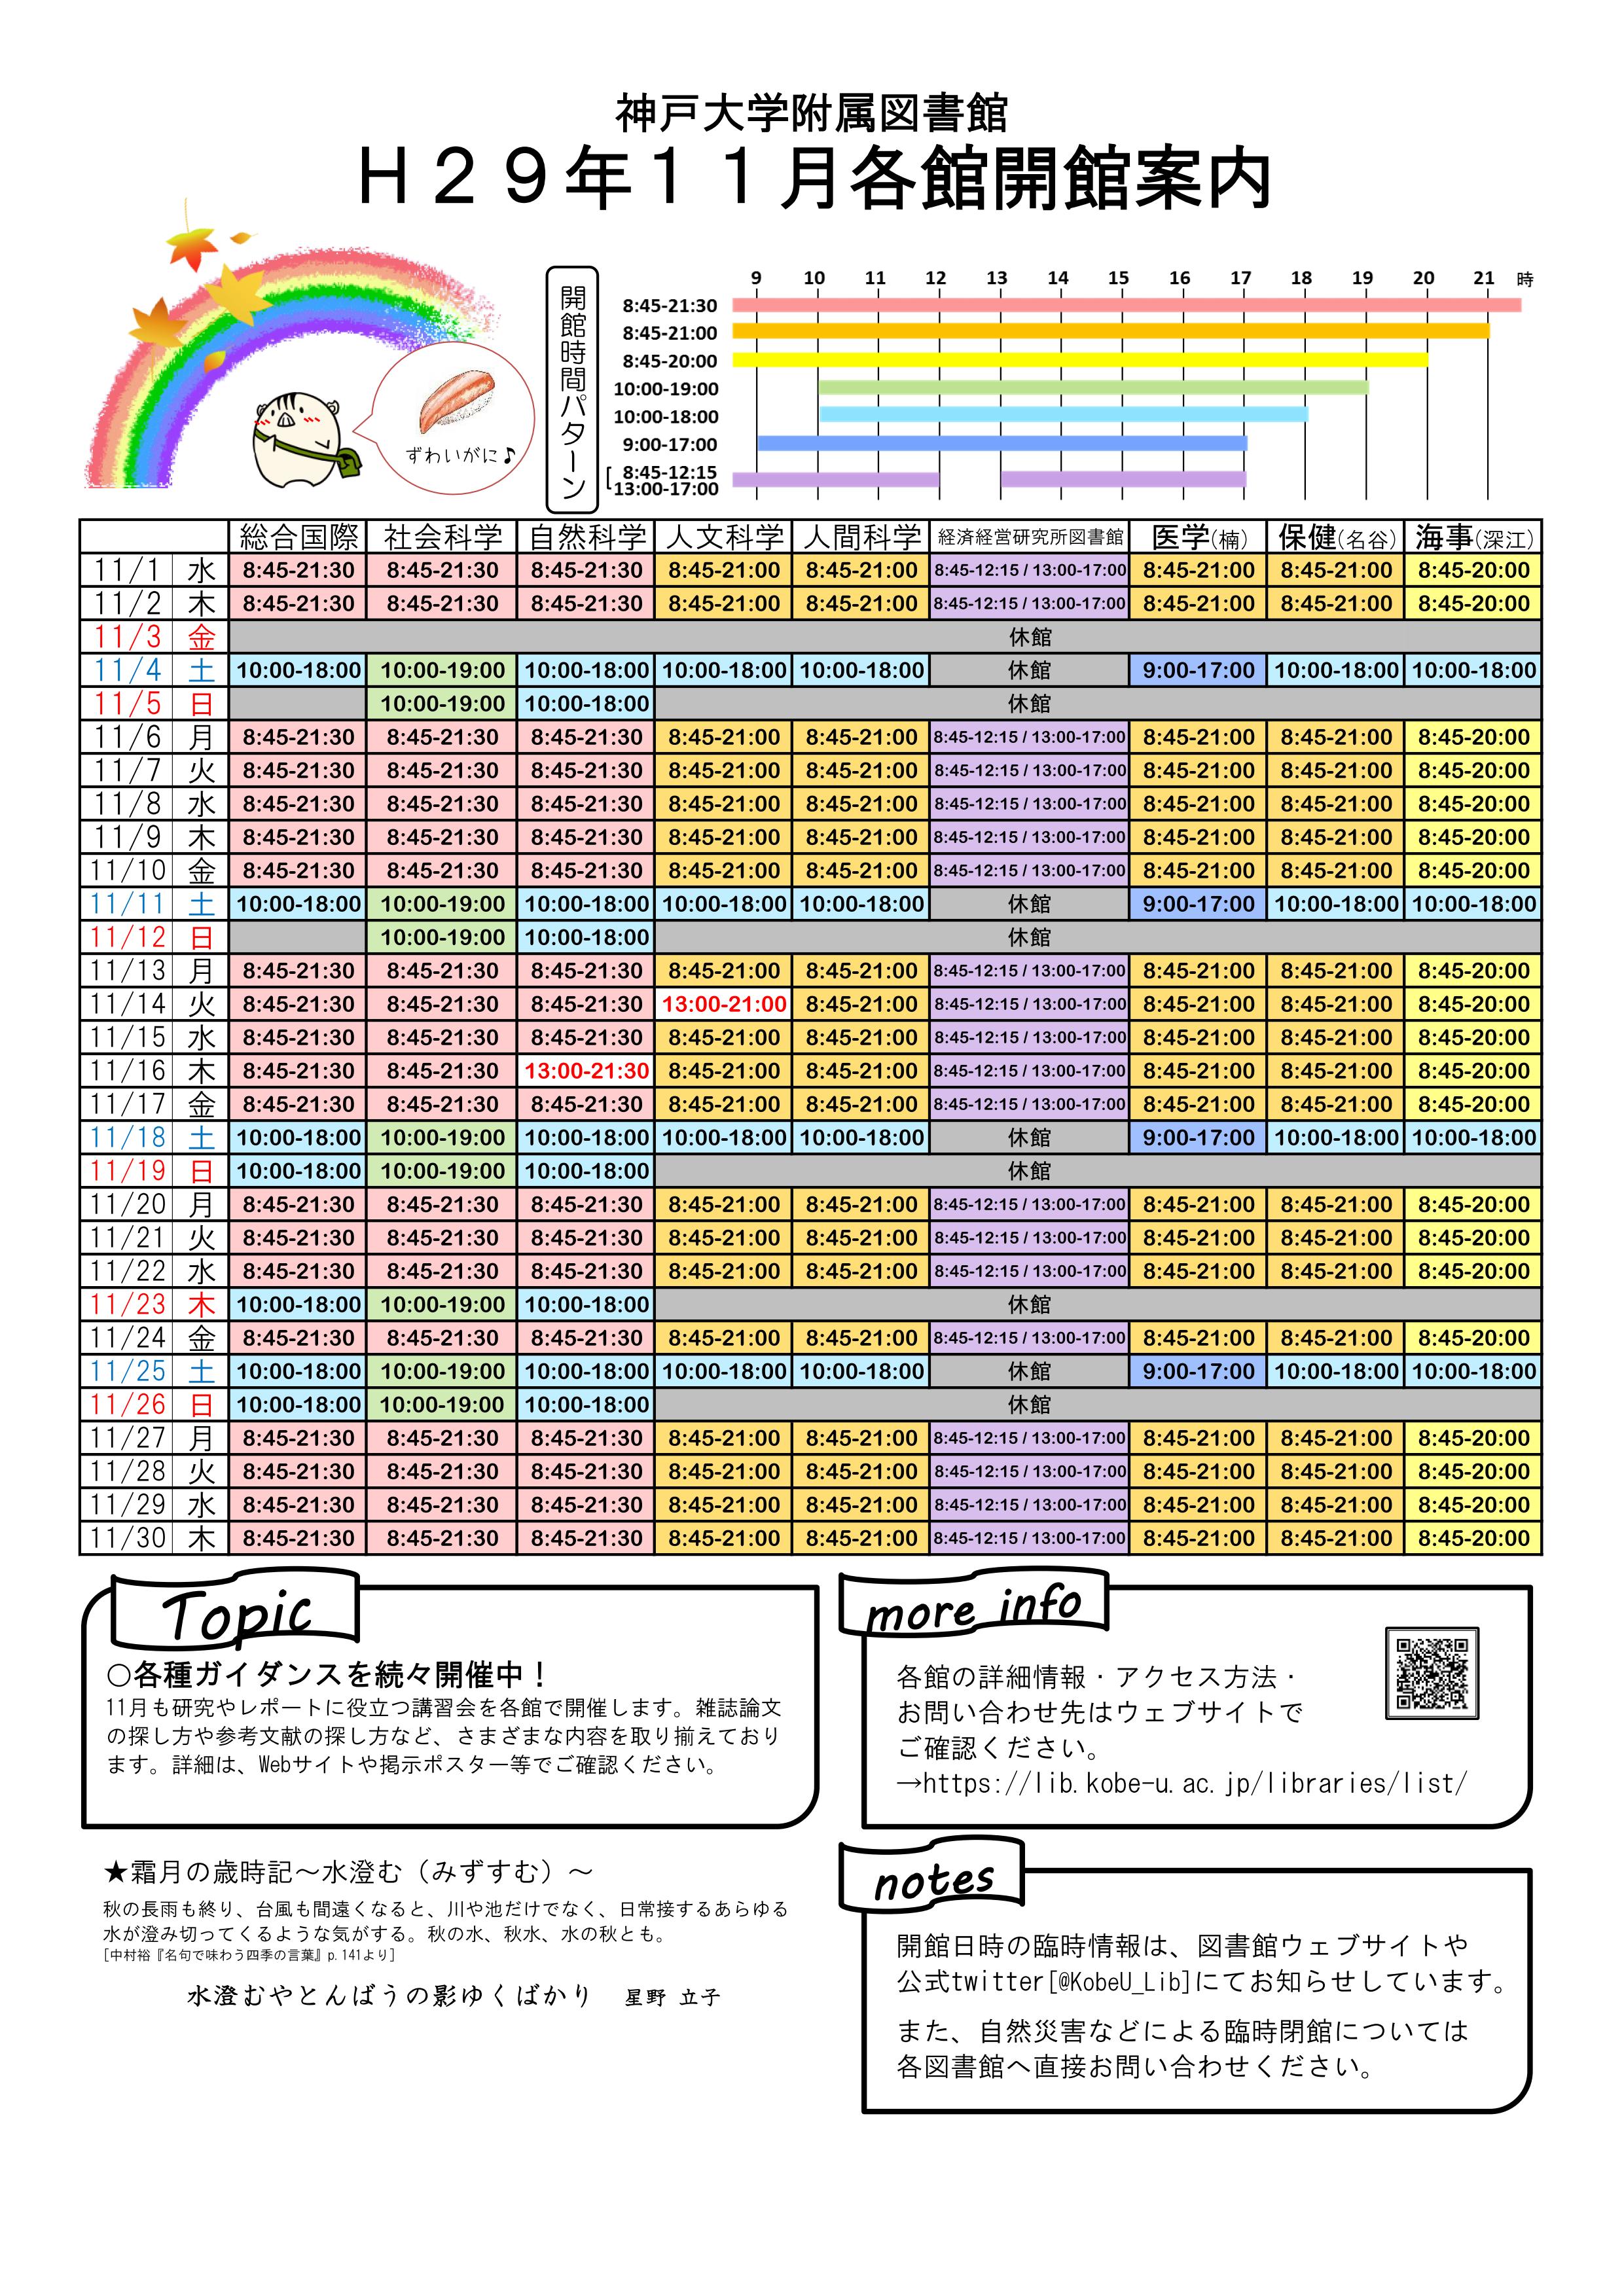 17年11月の全館開館カレンダーを作成しました 神戸大学附属図書館